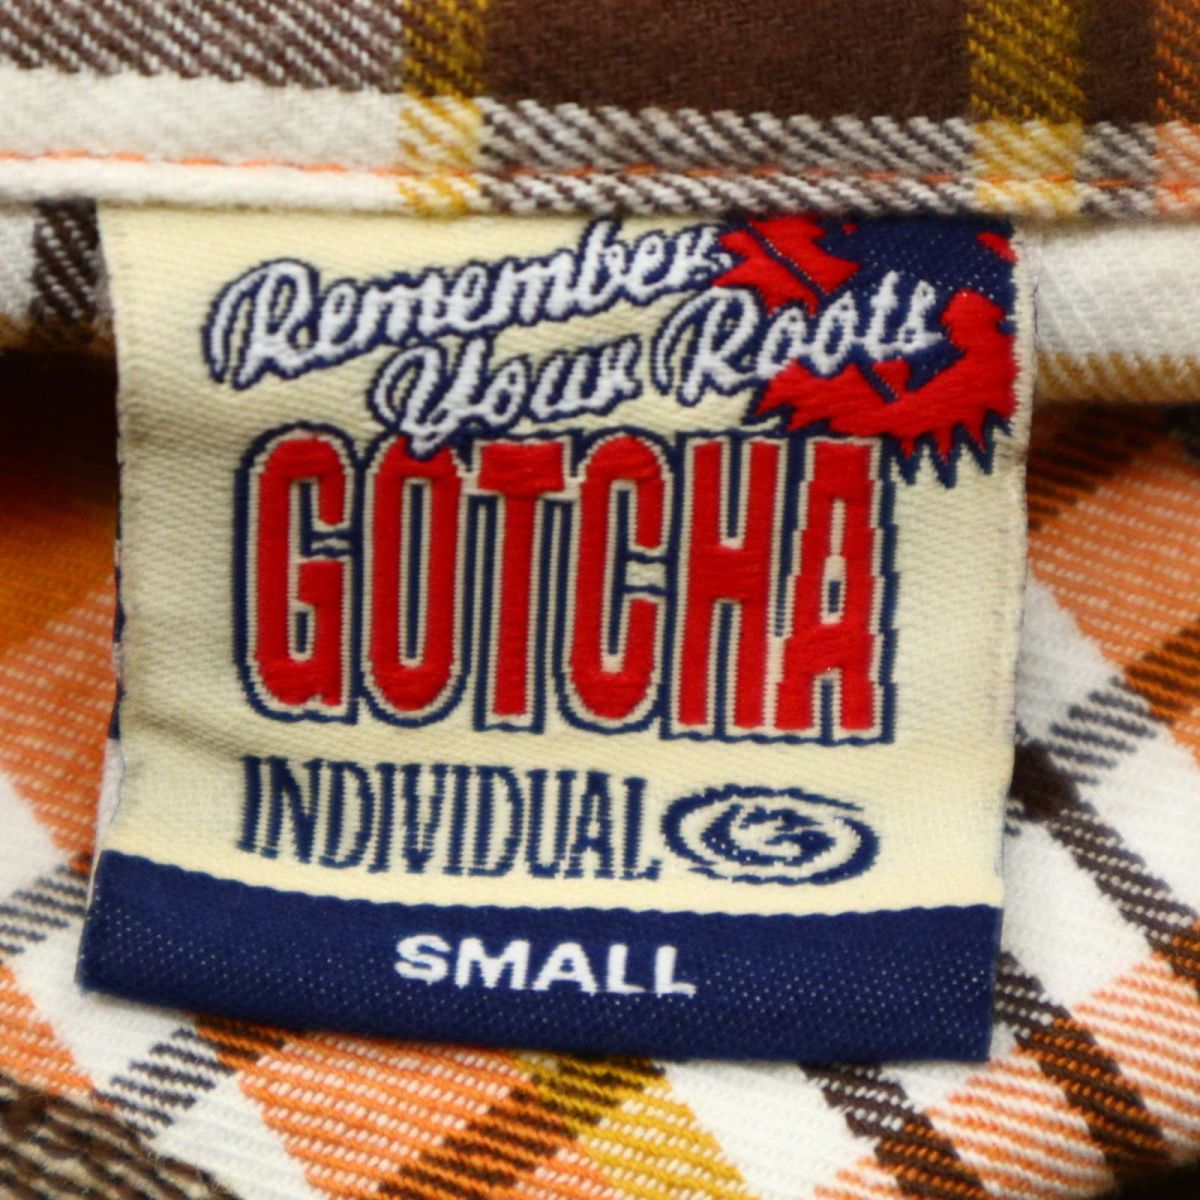 GOTCHA Gotcha осень-зима длинный рукав большой Logo вышивка * проверка фланель рубашка Sz.S мужской Surf желтый цвет C4T00309_1#B